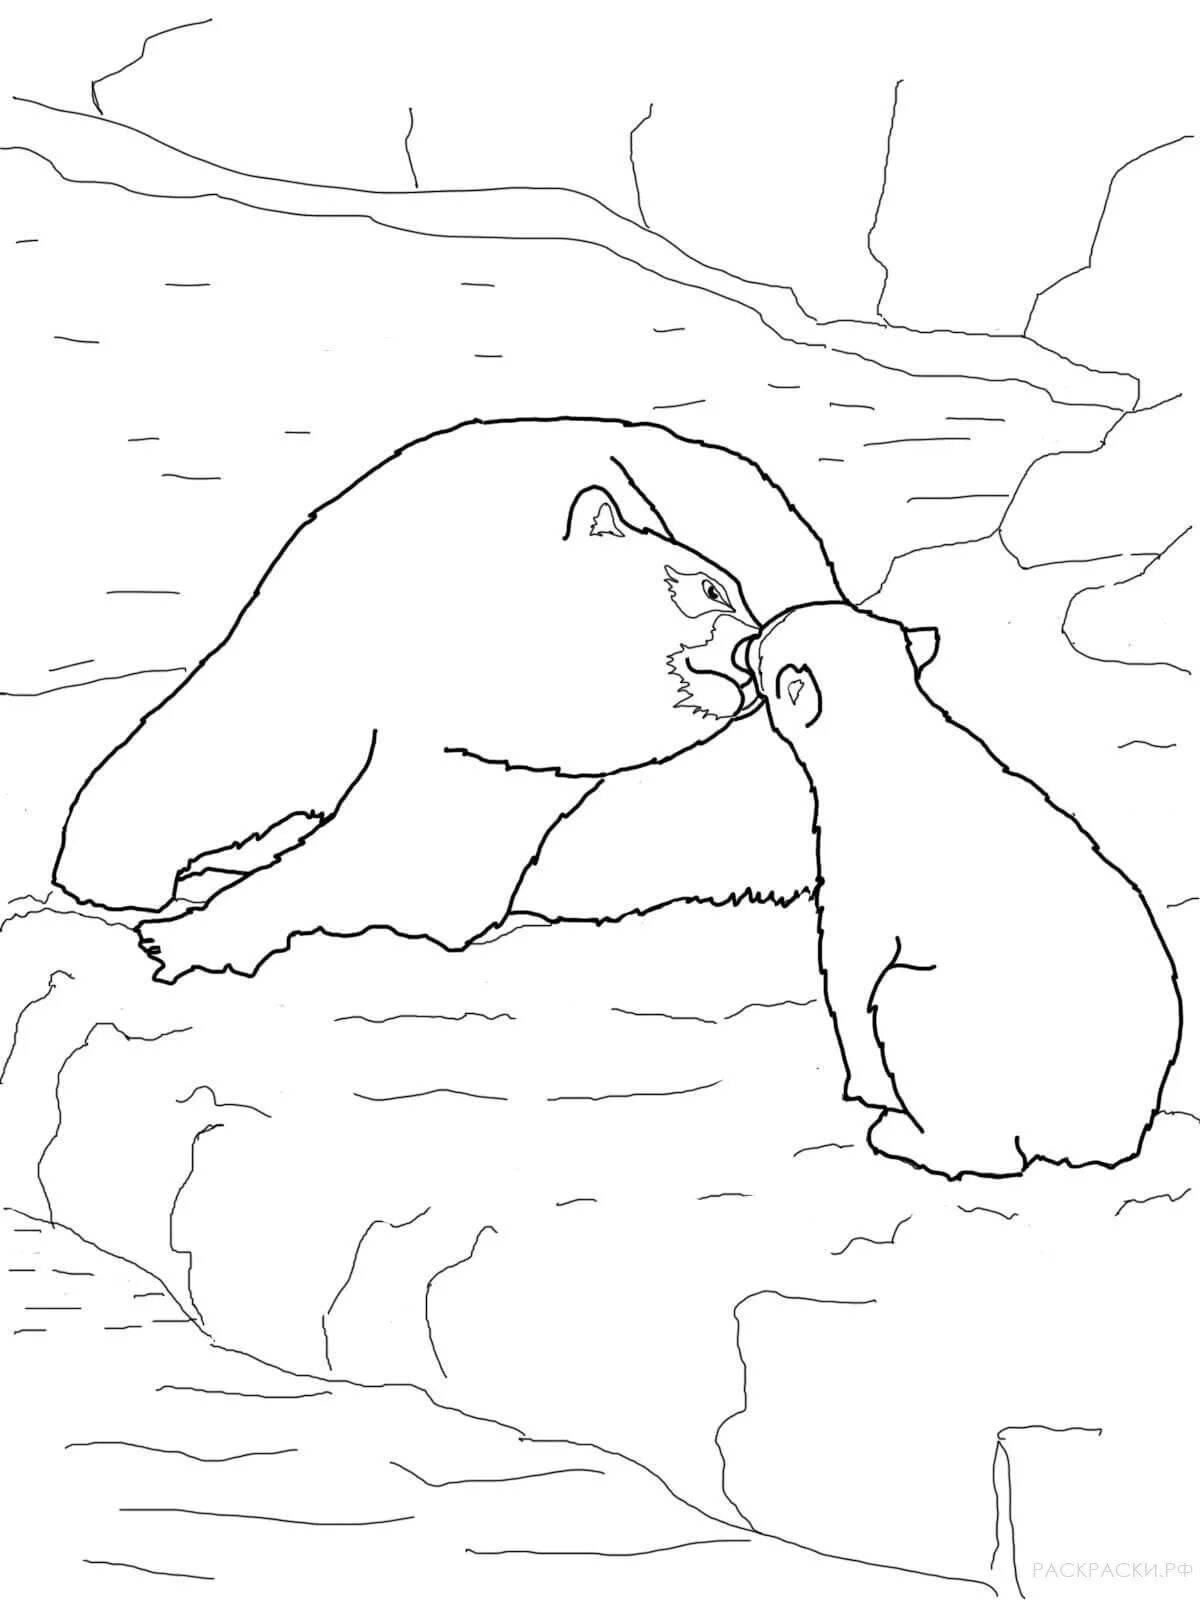 Charming polar bear coloring book